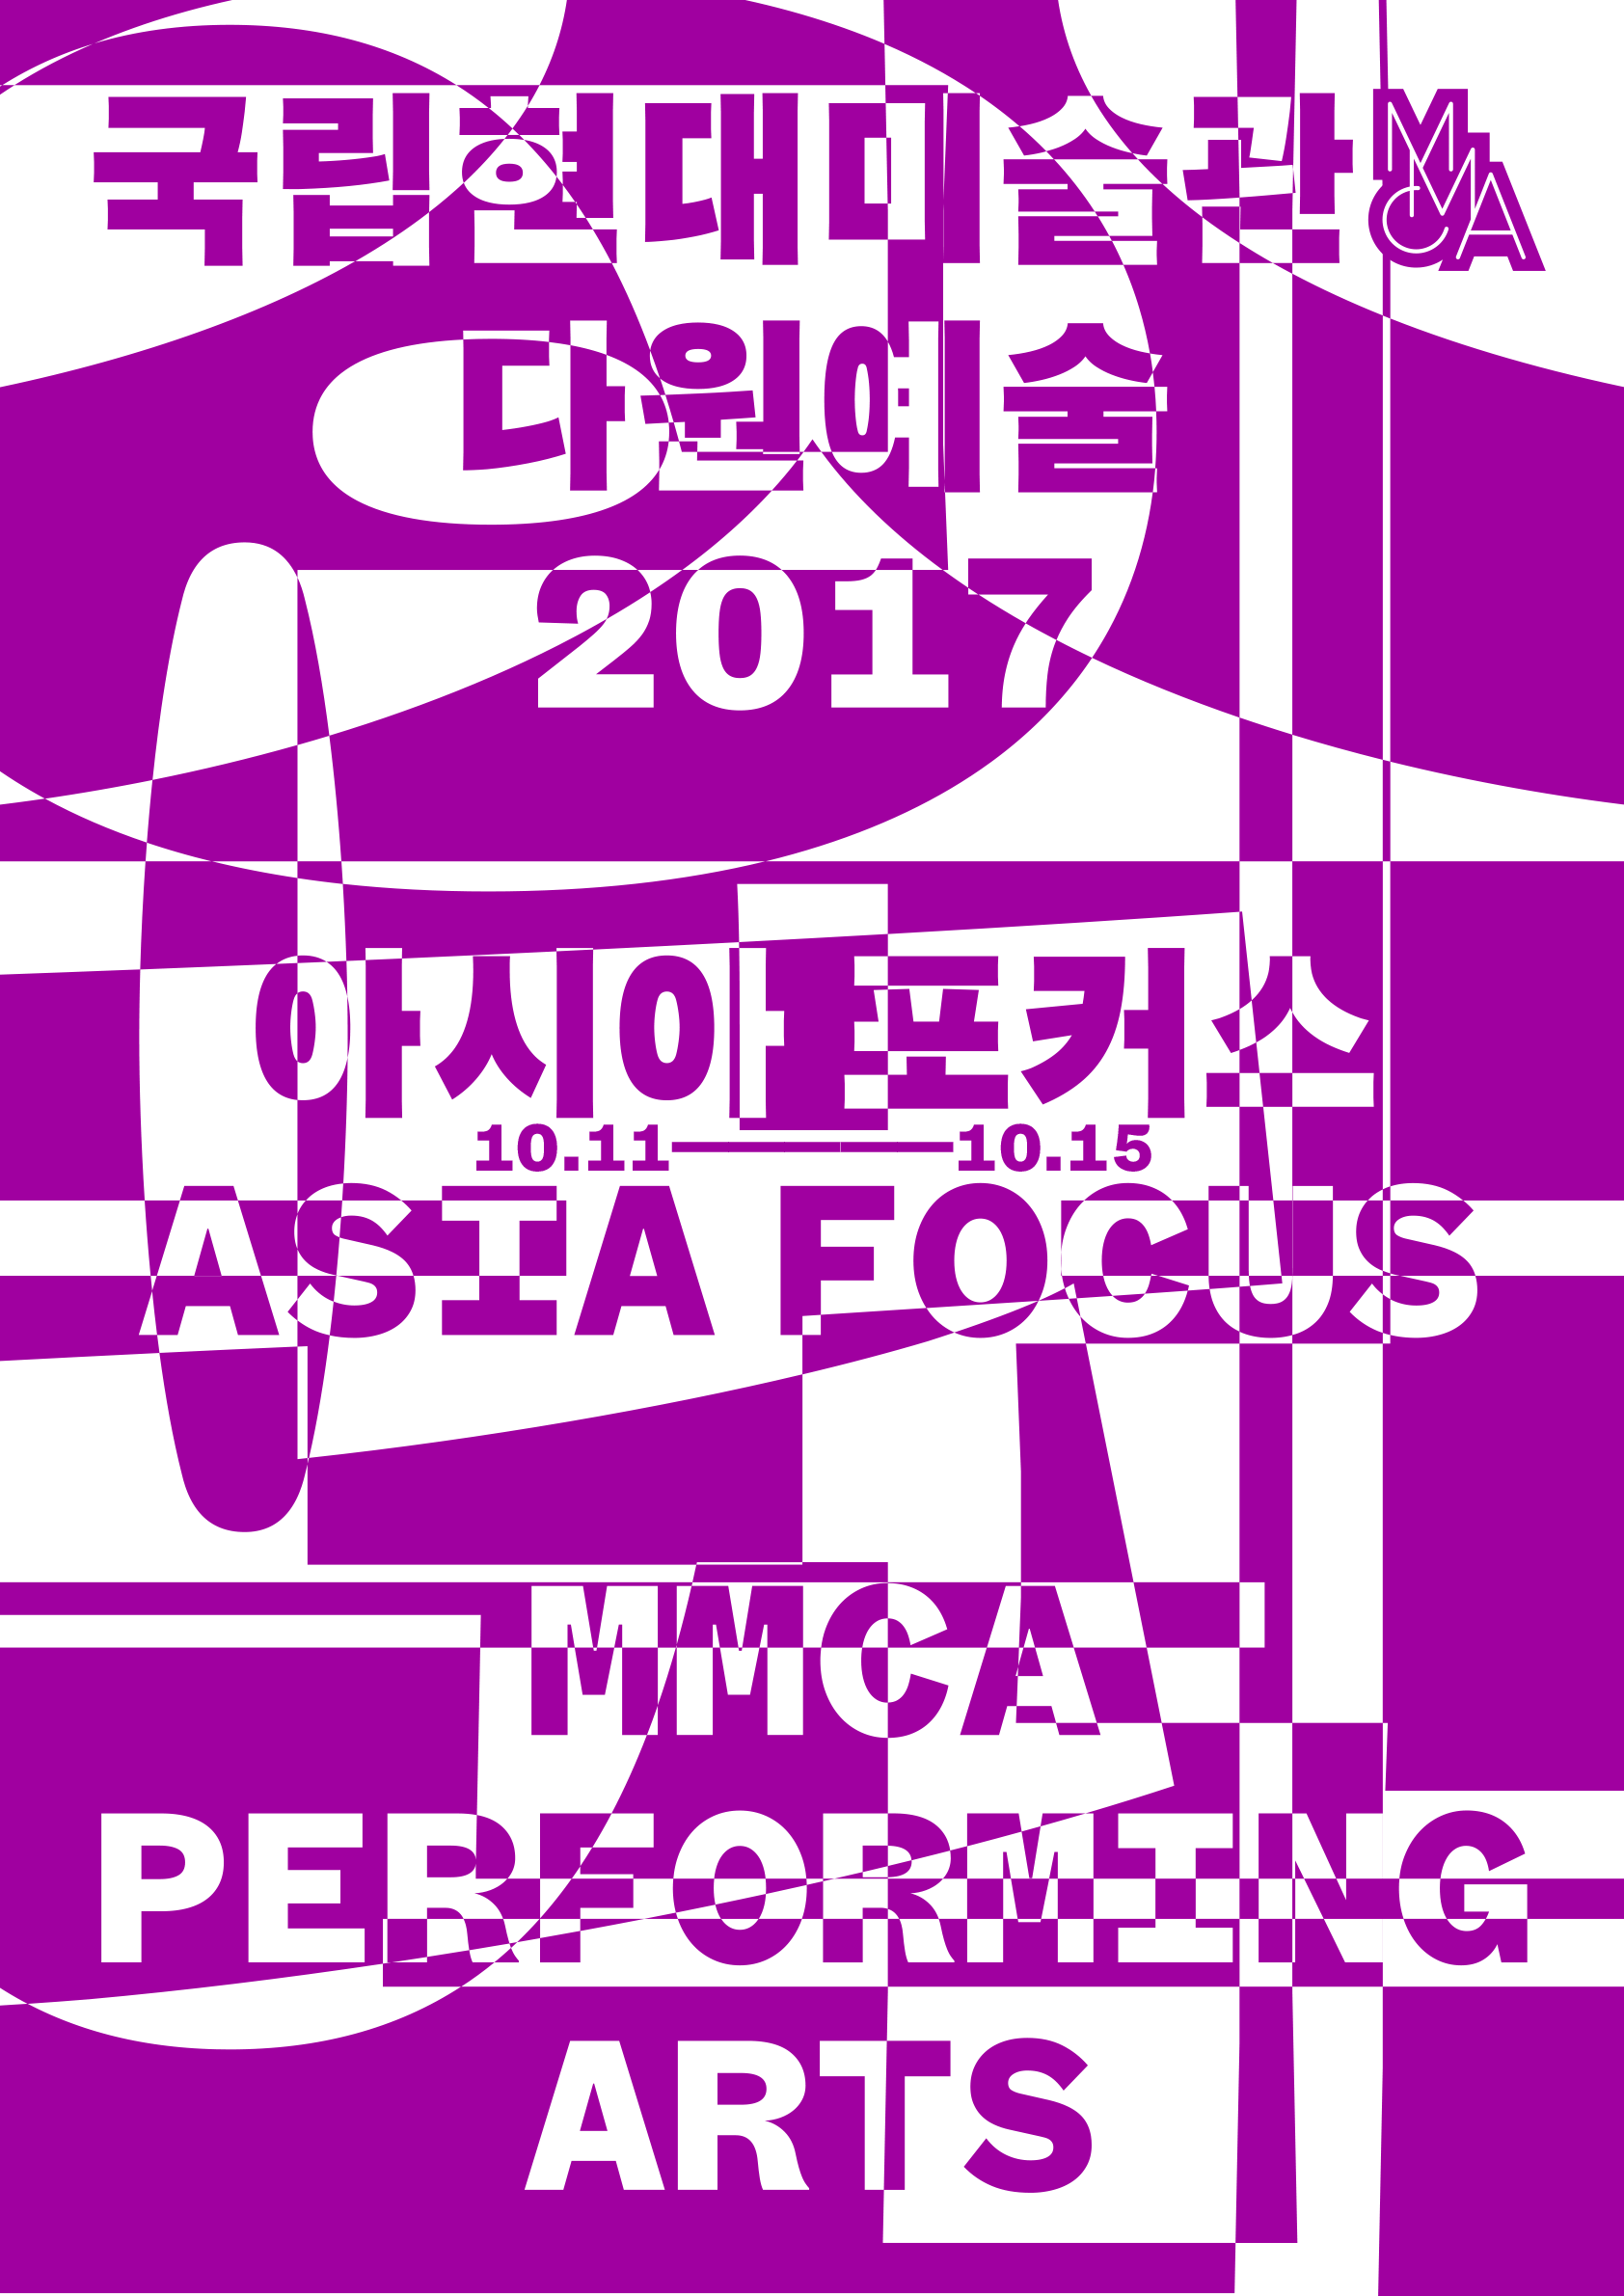 MMCA-2017-Asia-Focus-poster-rgb